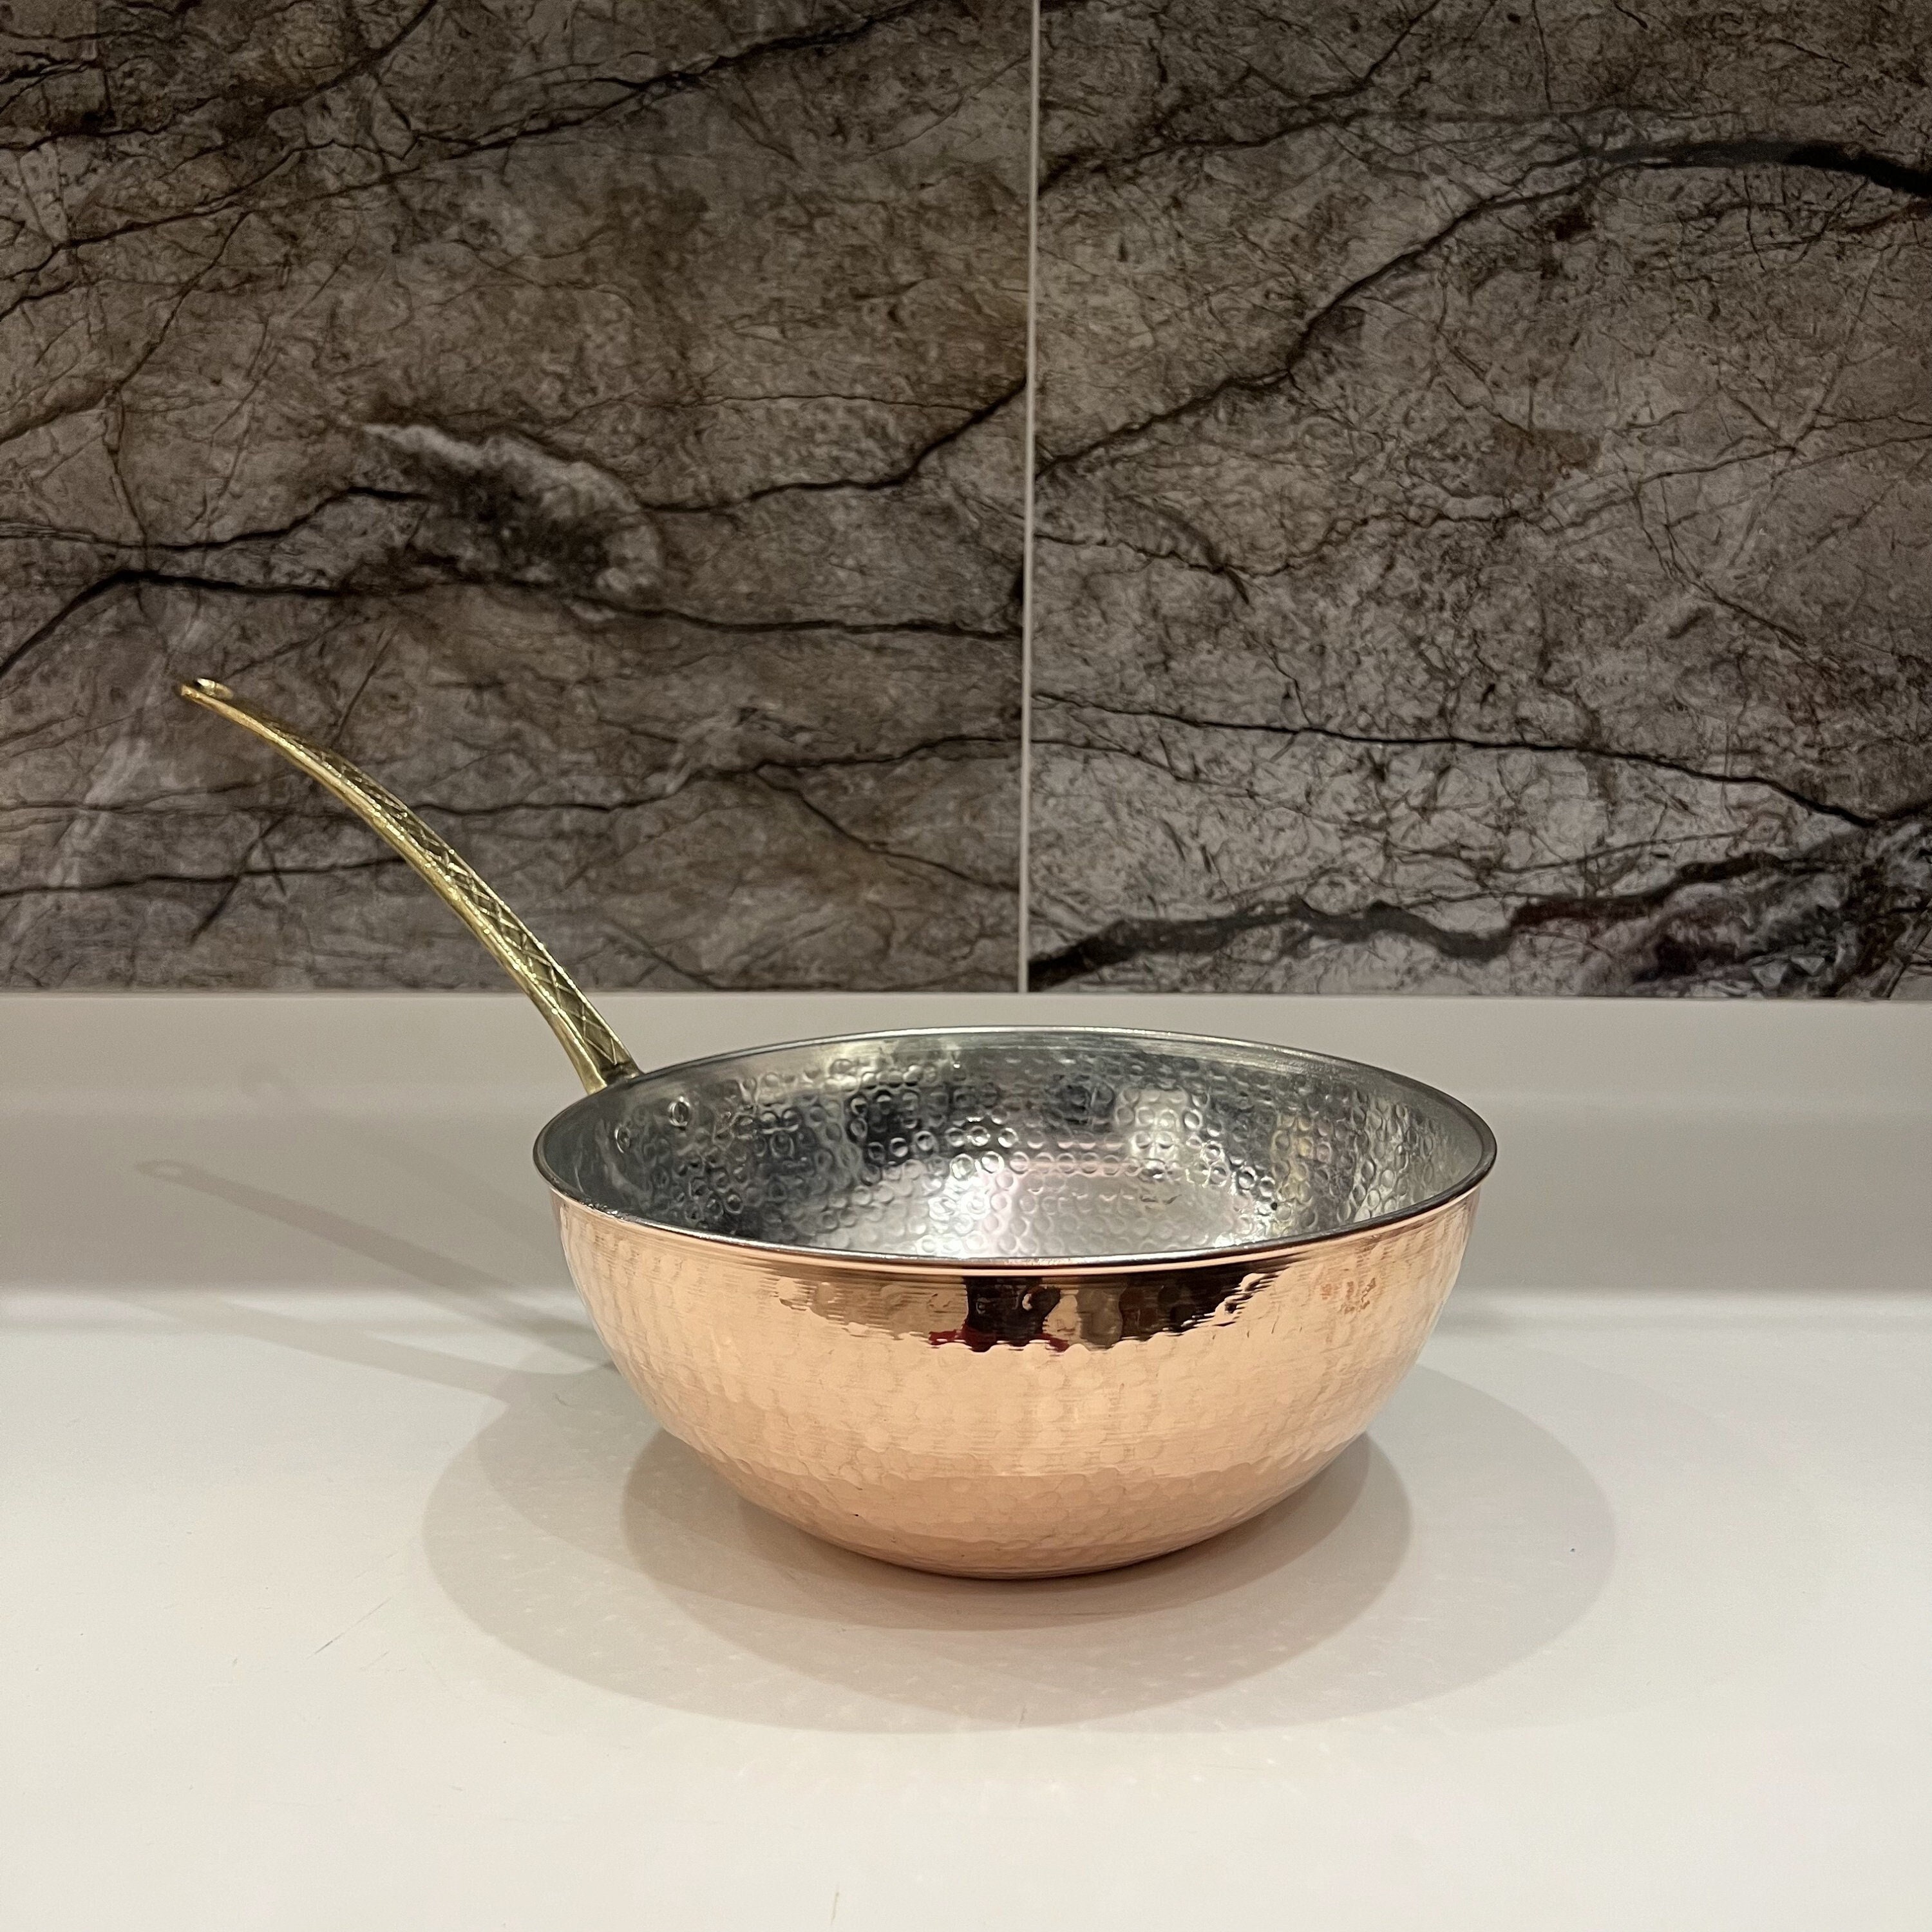 Heavy copper risotto pot / wok